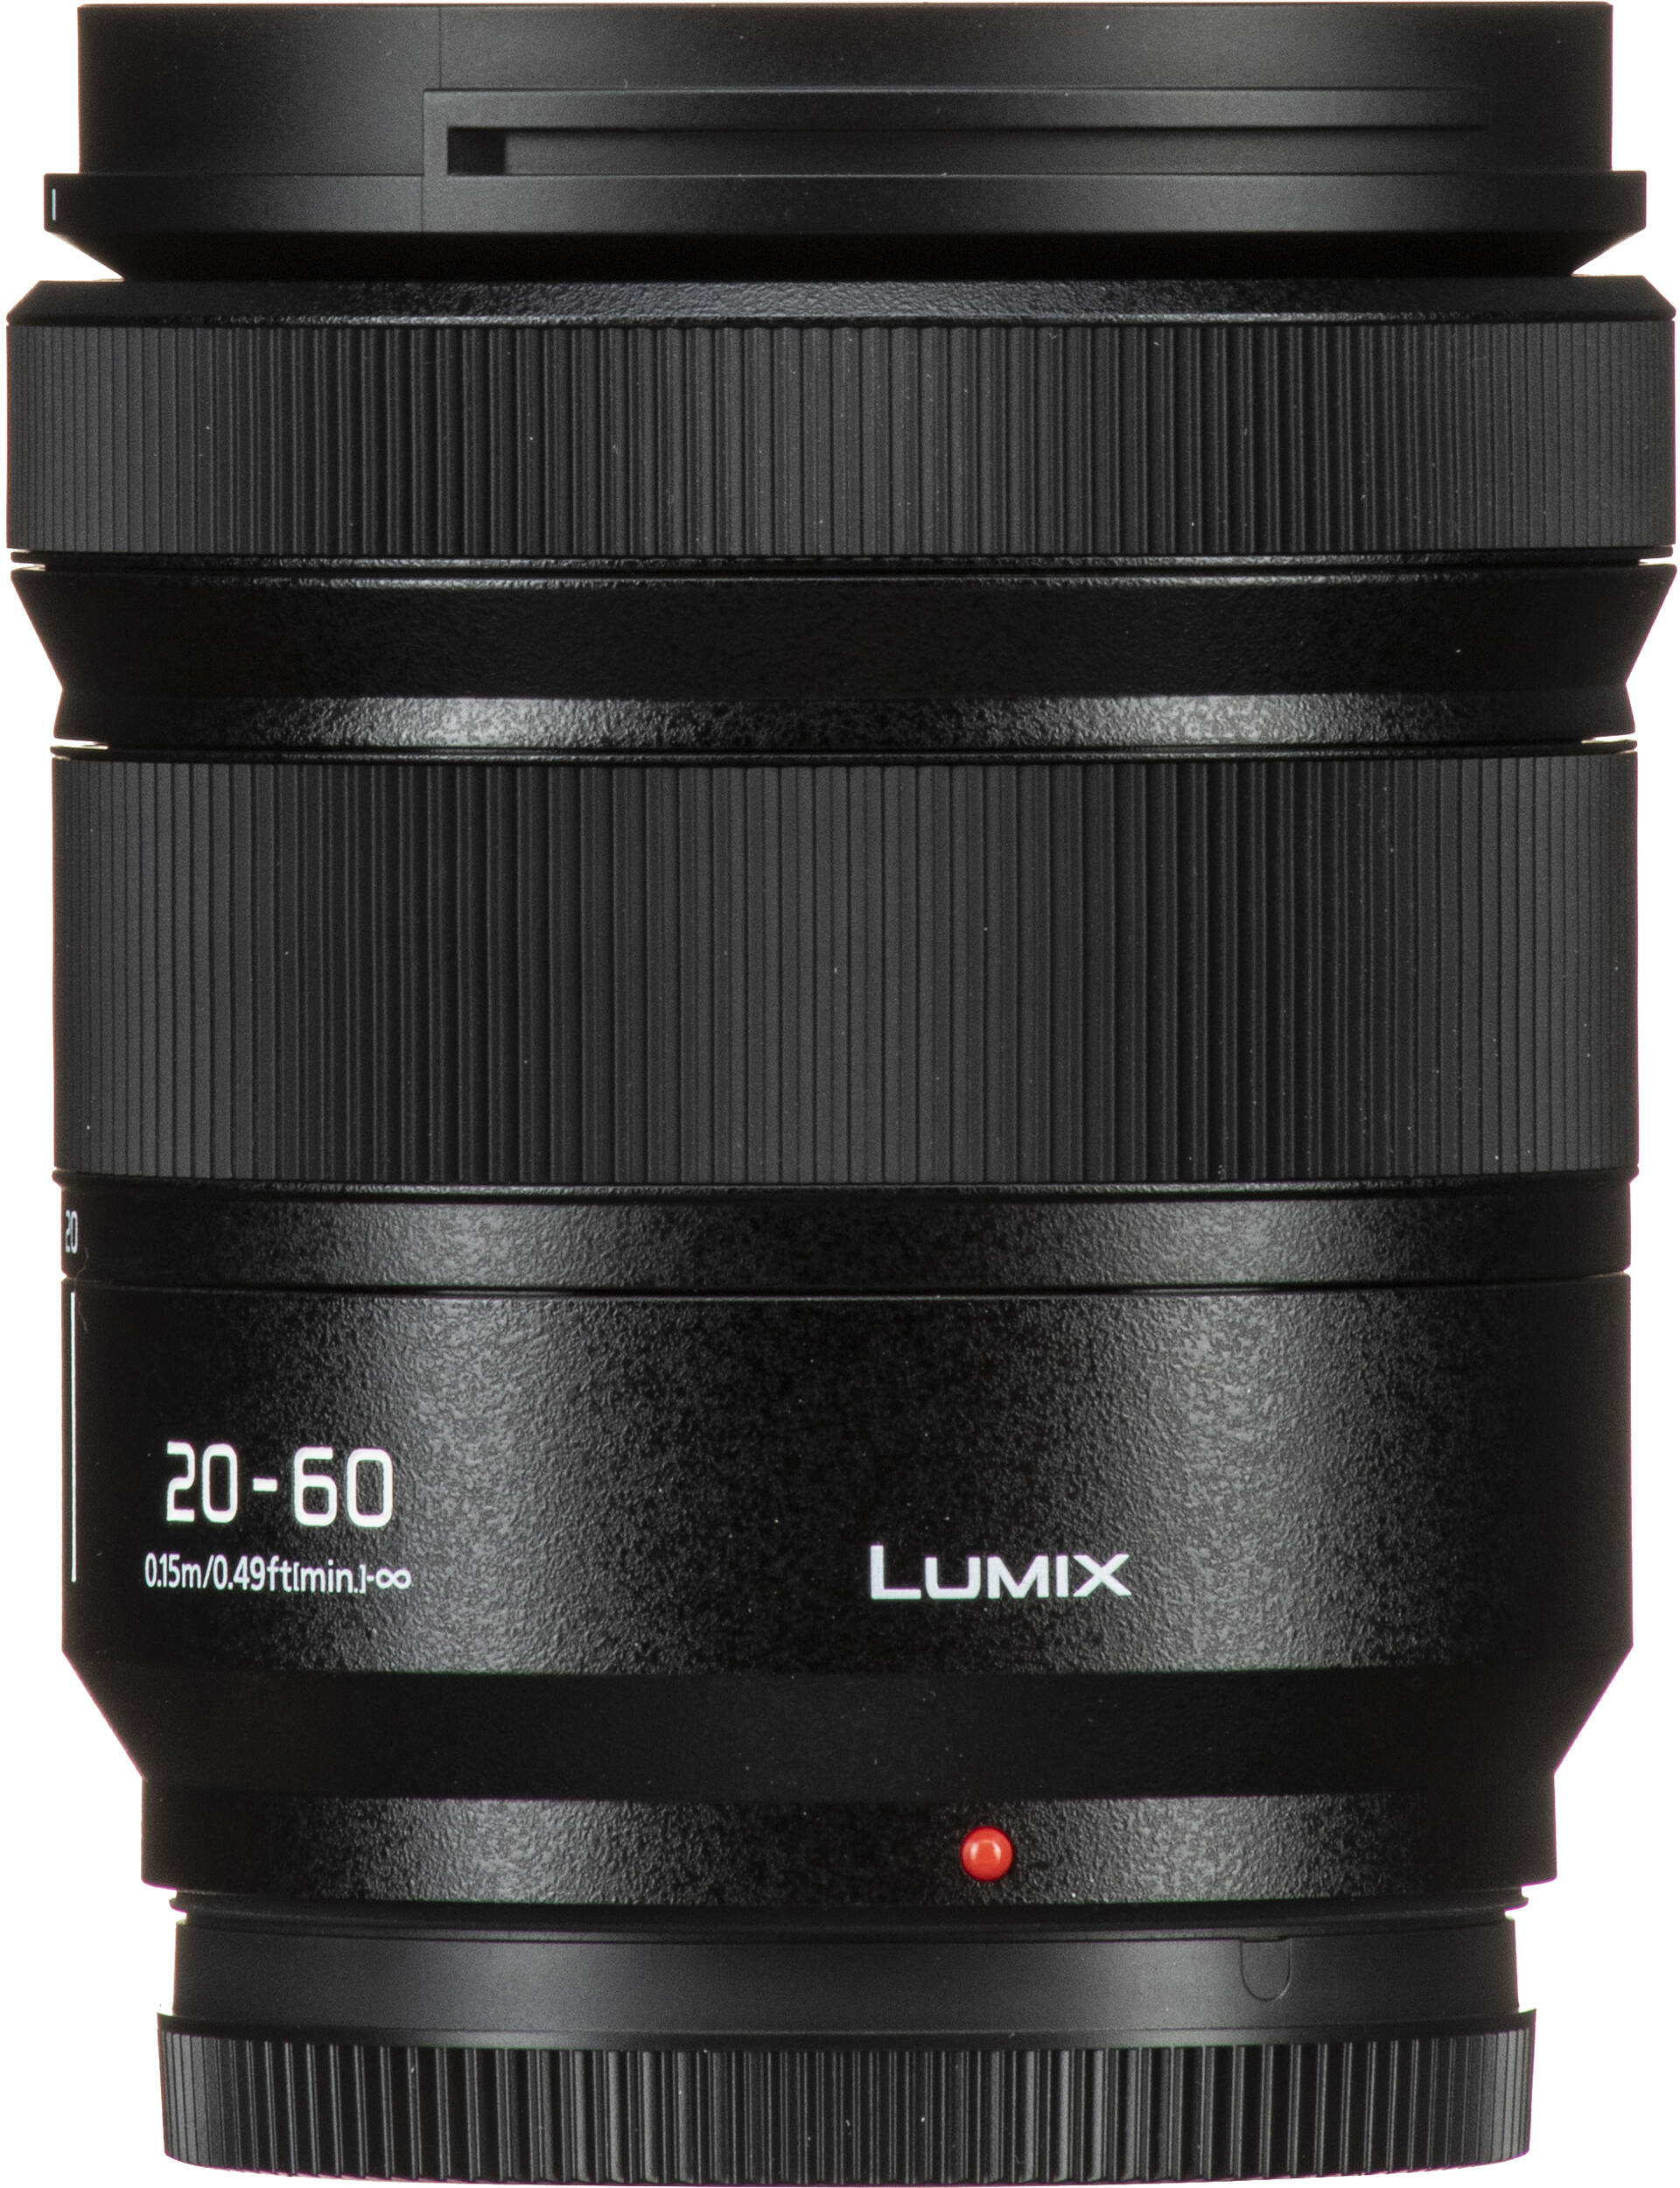 Фотоапарат Panasonic Lumix DC-S9 + 20-60mm f/3.5-5.6 Dark Olive (DC-S9KE-G)фото17